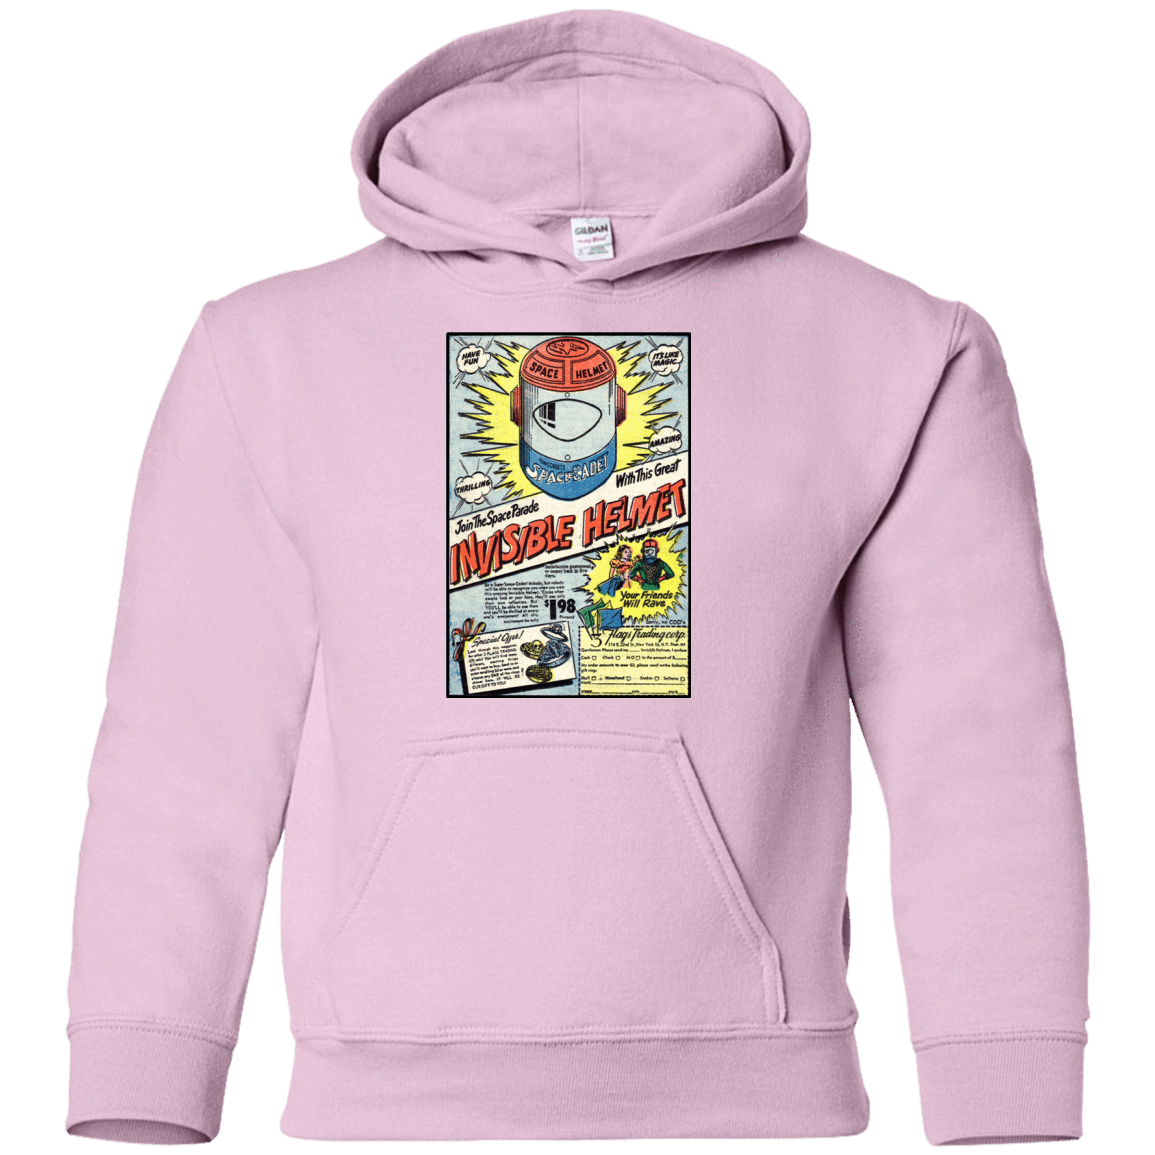 Sweatshirts Light Pink / YS Space Helmet Youth Hoodie